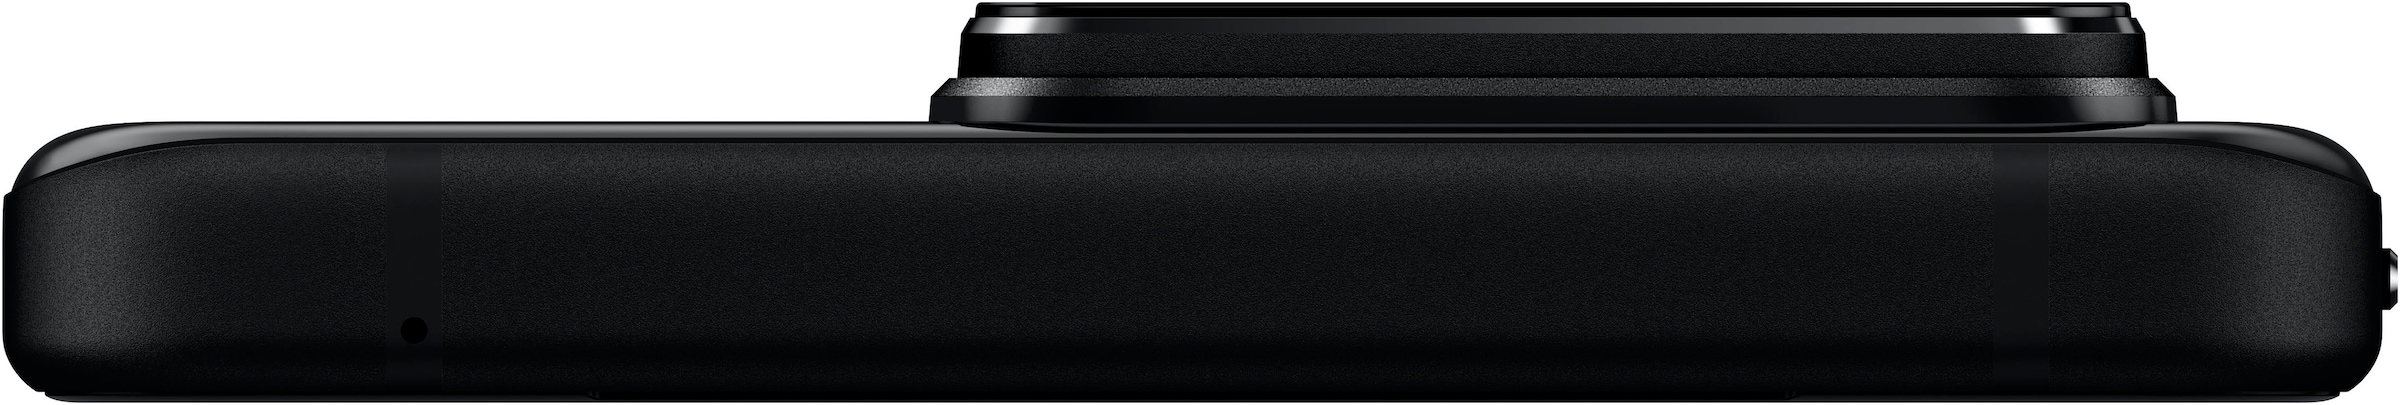 Asus Smartphone »Rog Phone 8«, schwarz, 17,22 cm/6,78 Zoll, 256 GB Speicherplatz, 50 MP Kamera